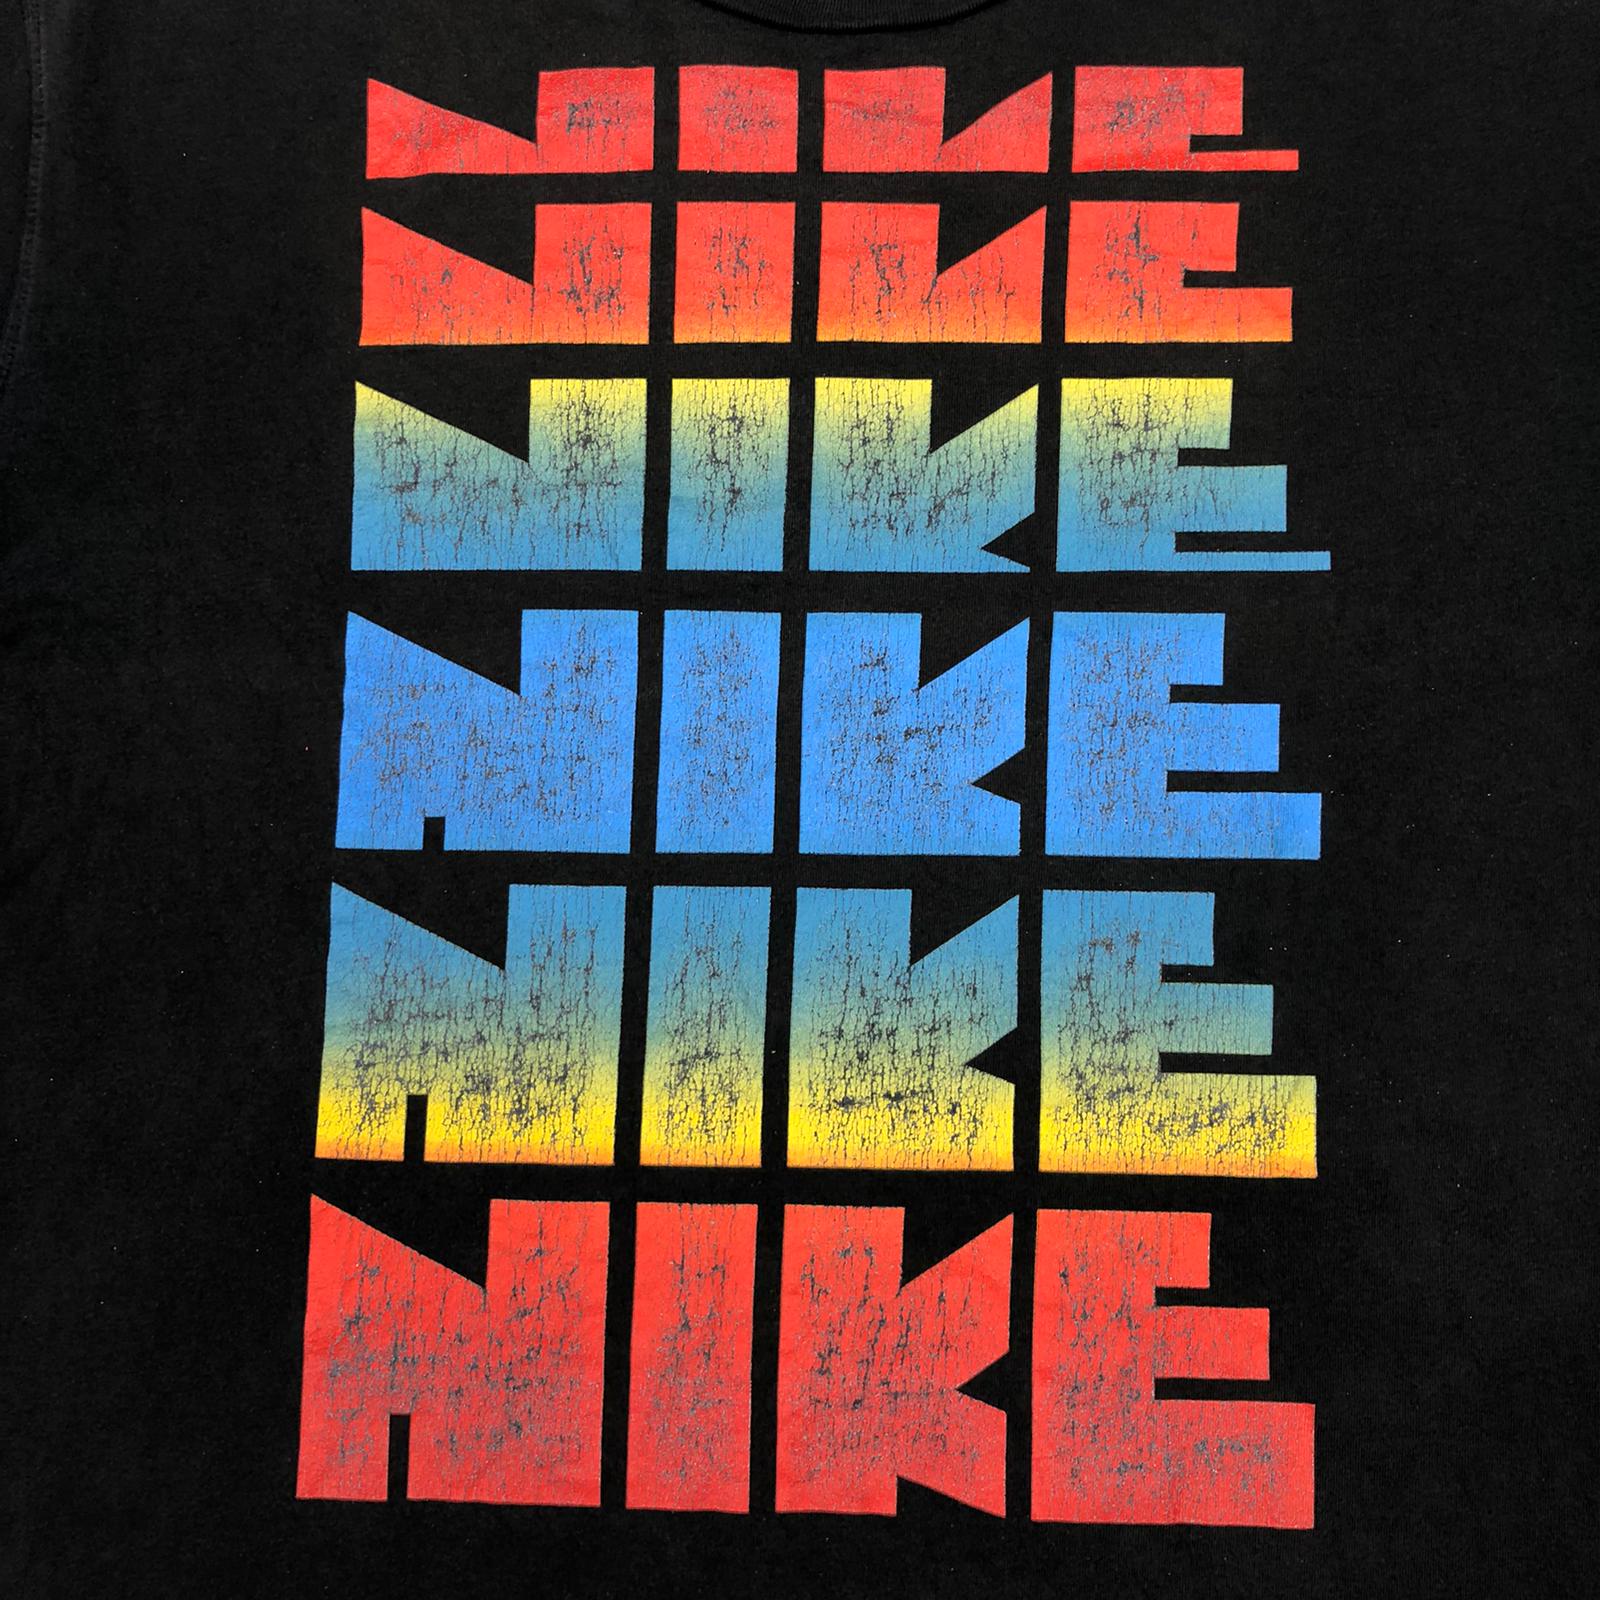 80's Nike t-shirt